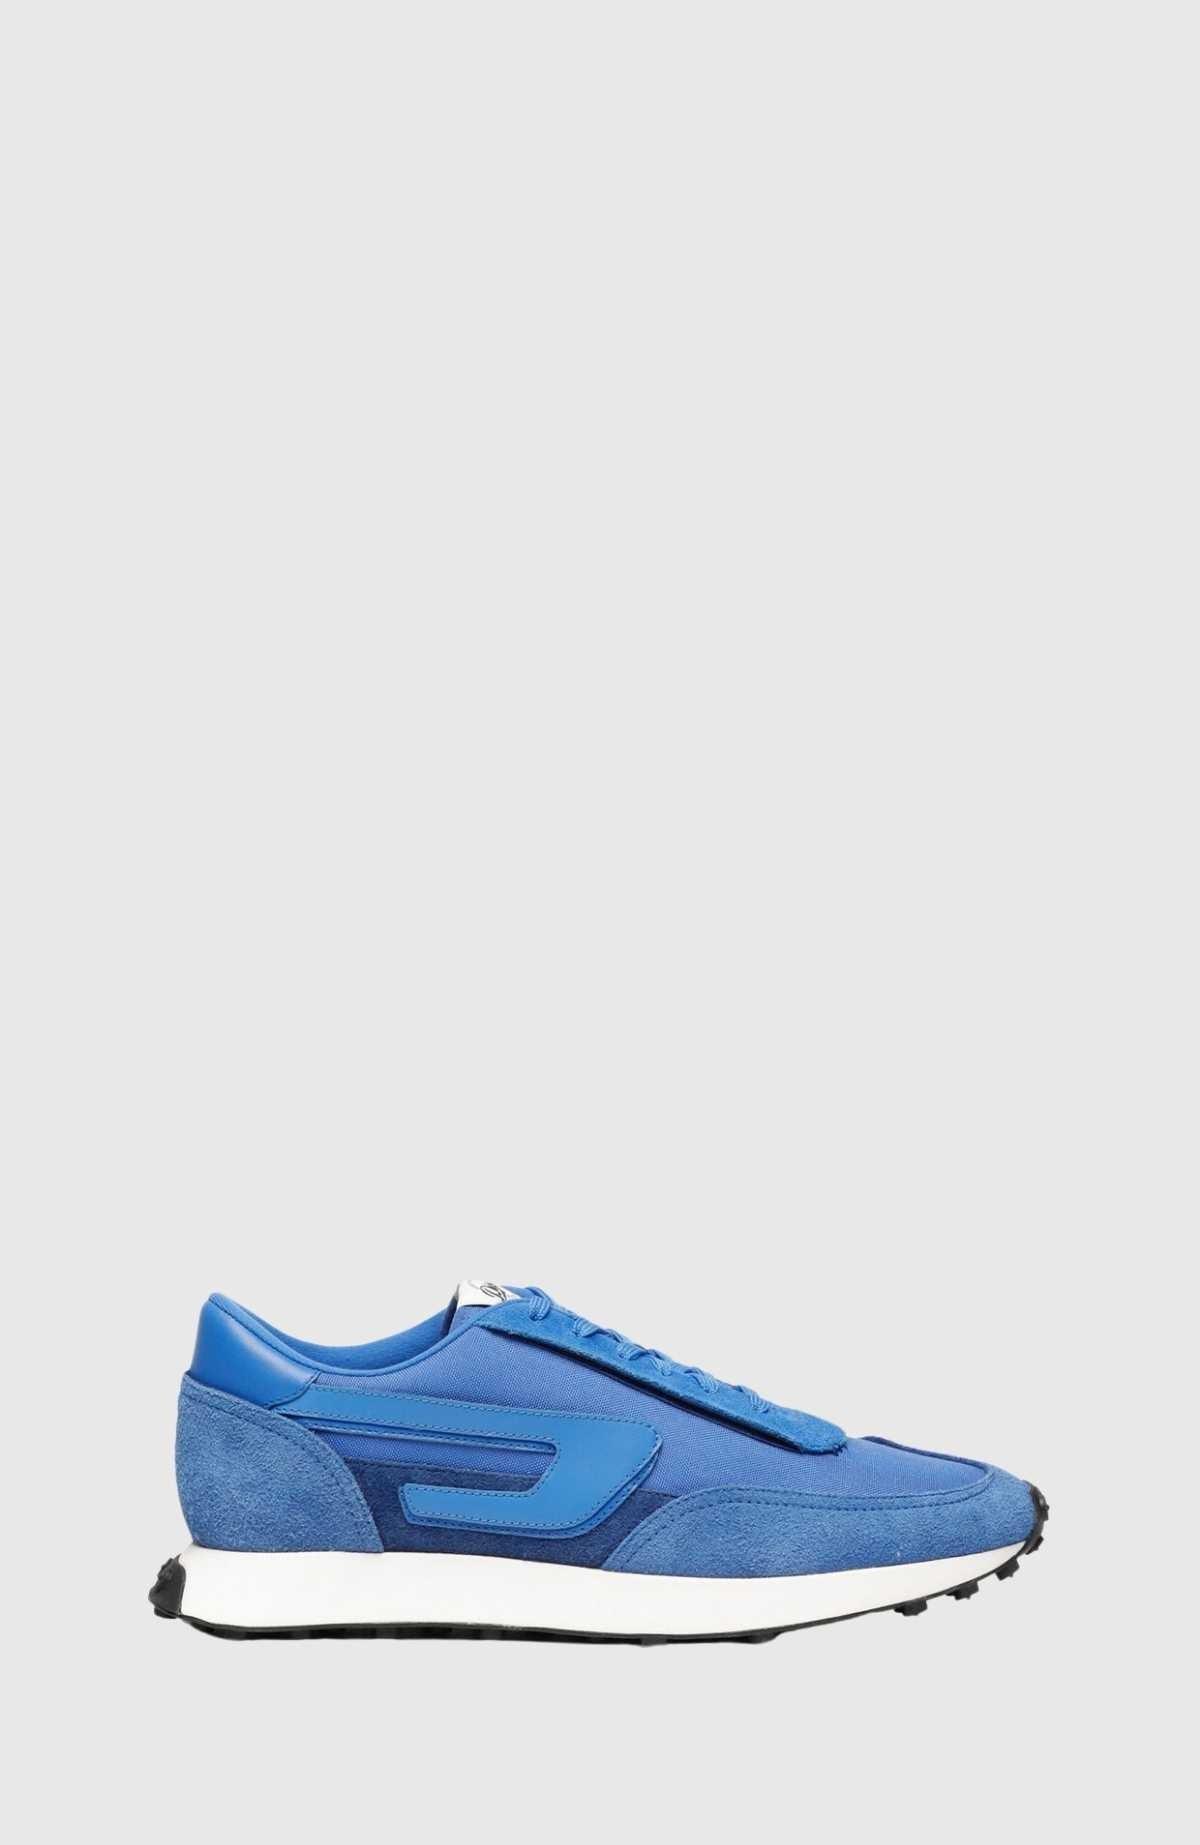 Tenis Diesel S-Racer LC Sneaker - Azul - tiendadicons.com